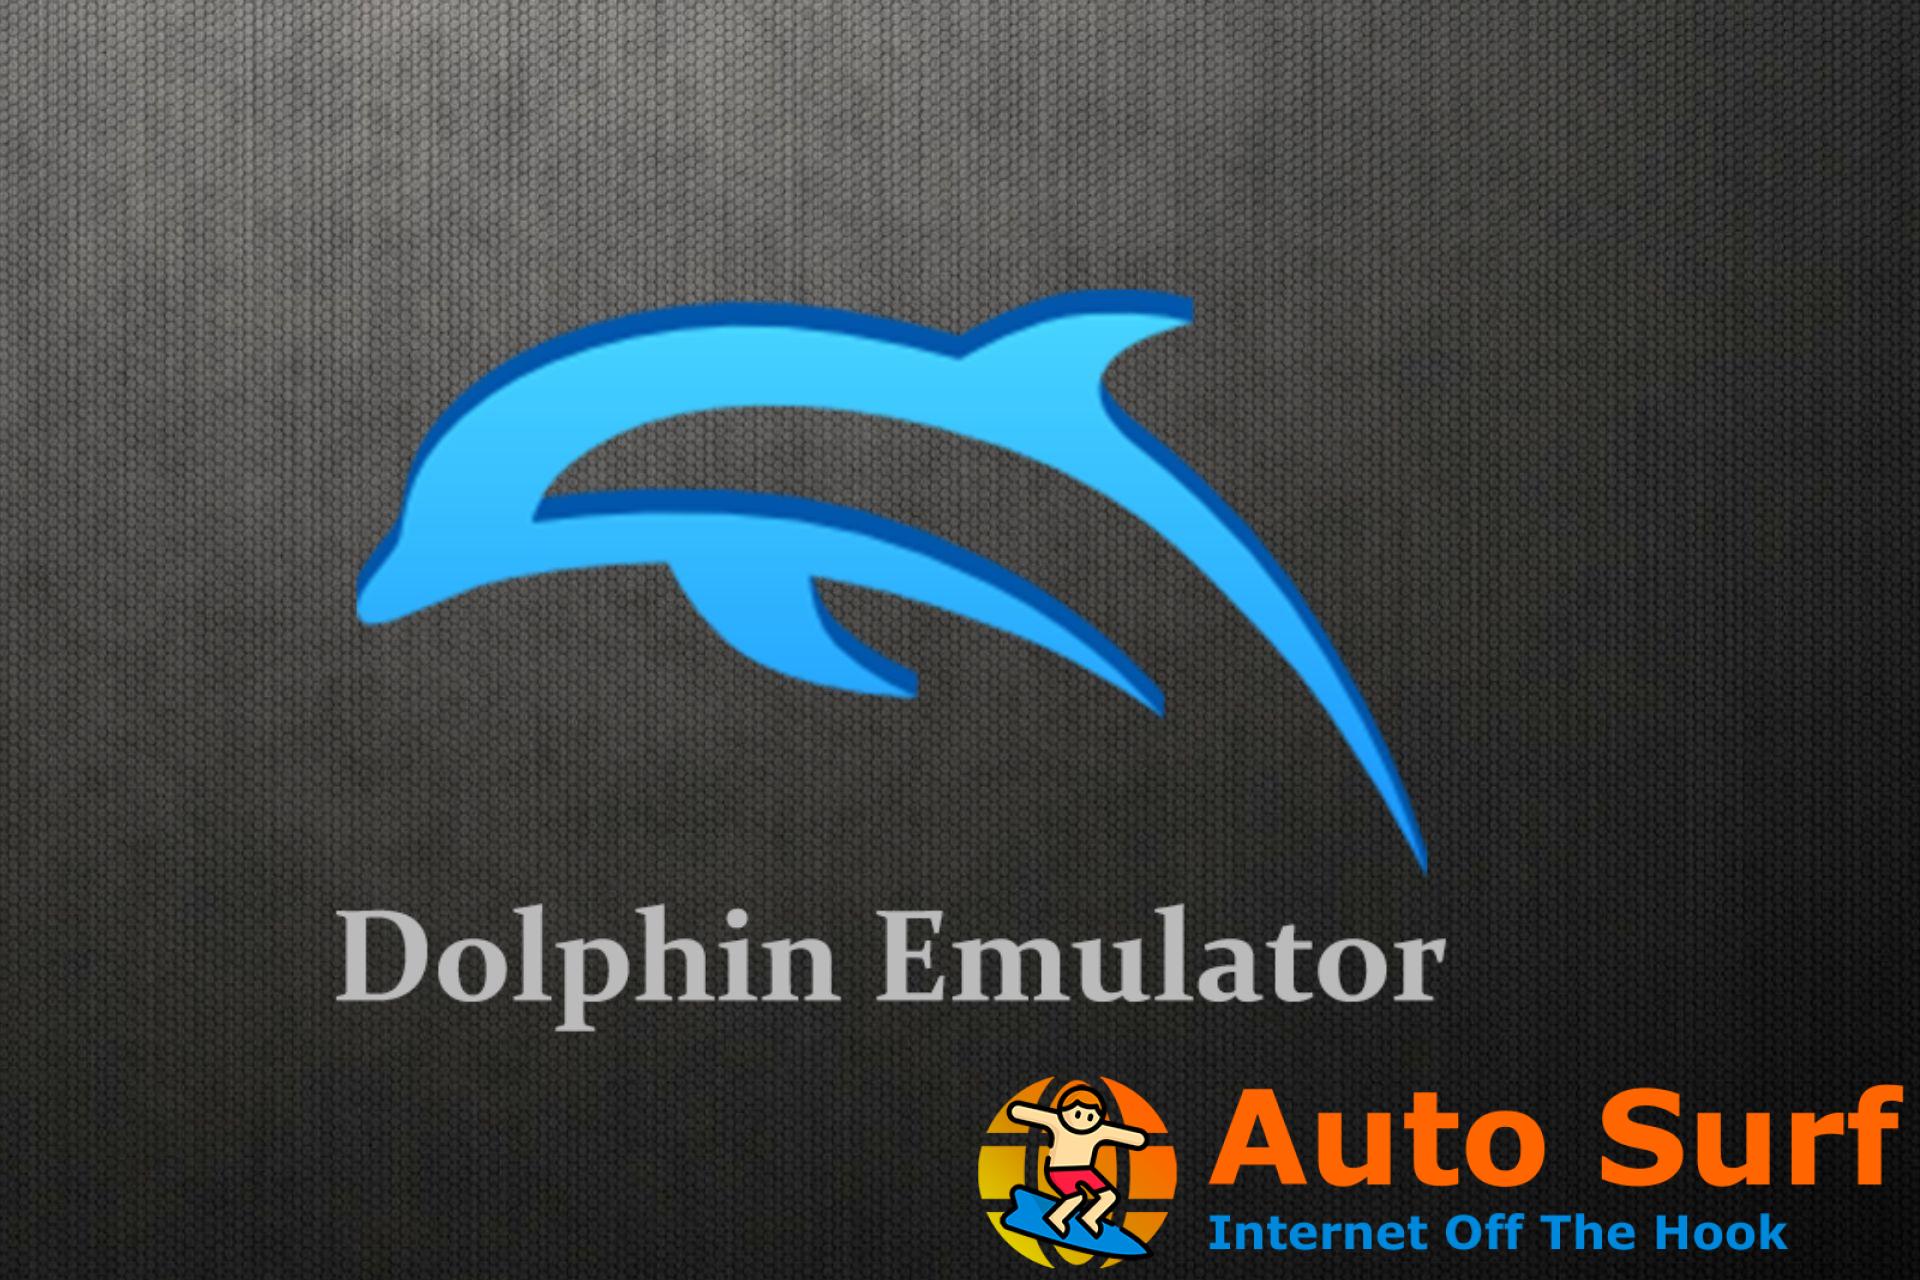 Dolphin Emulator no funciona en Windows: 5 formas de solucionarlo